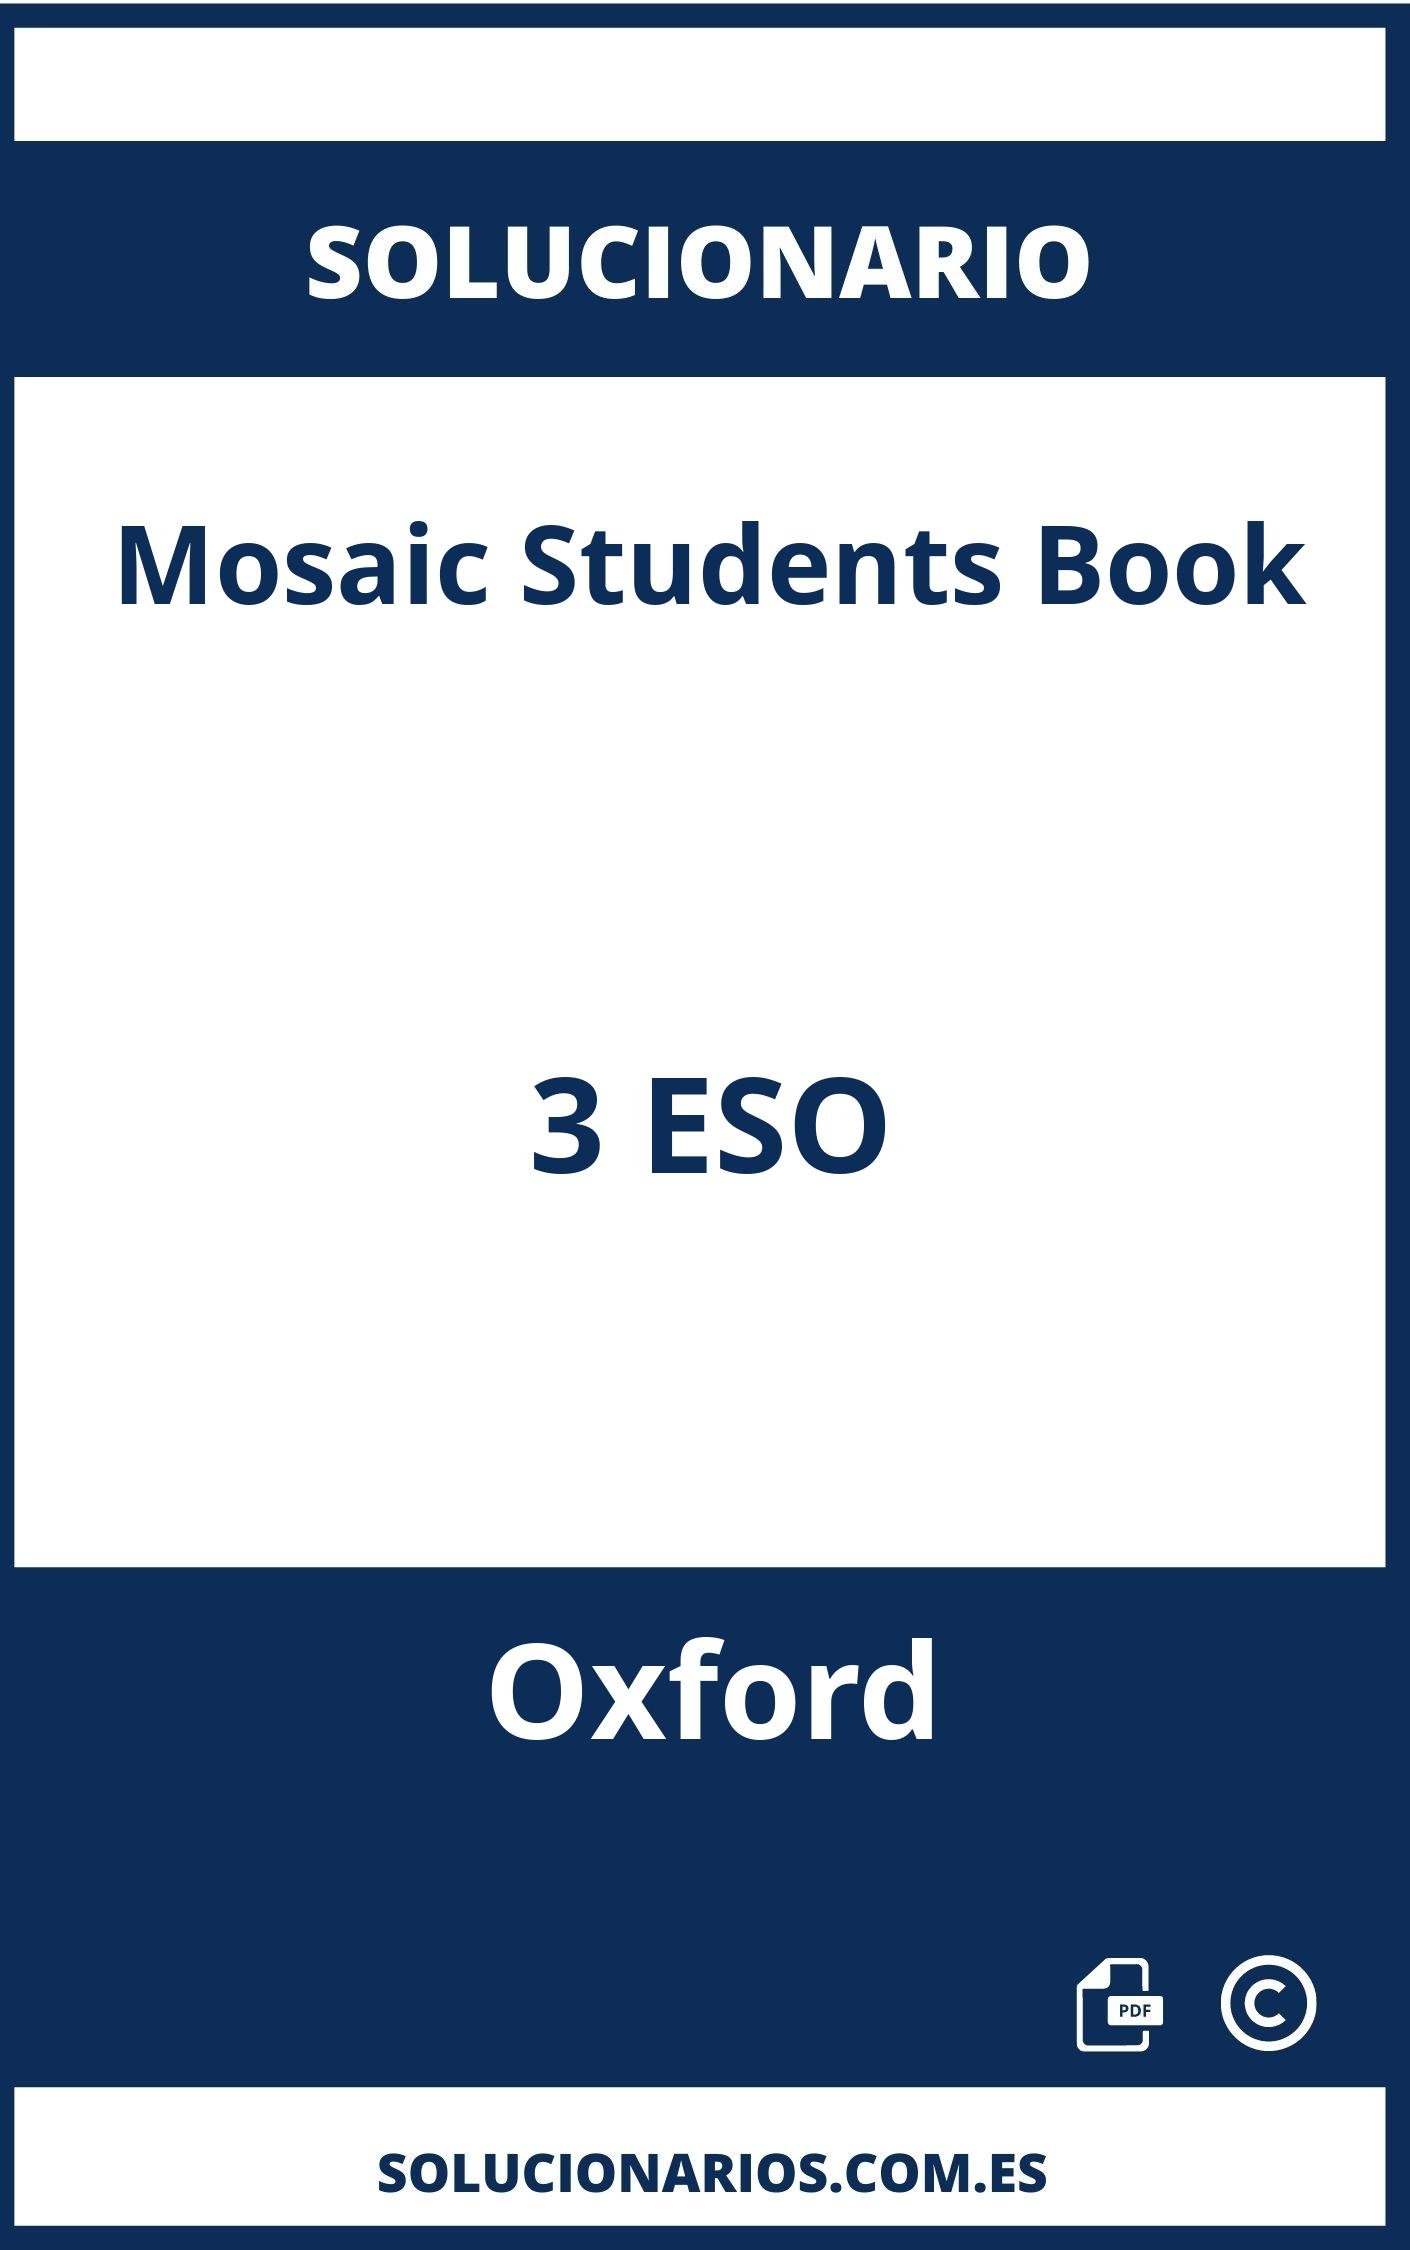 Solucionario Mosaic Students Book 3 ESO Oxford